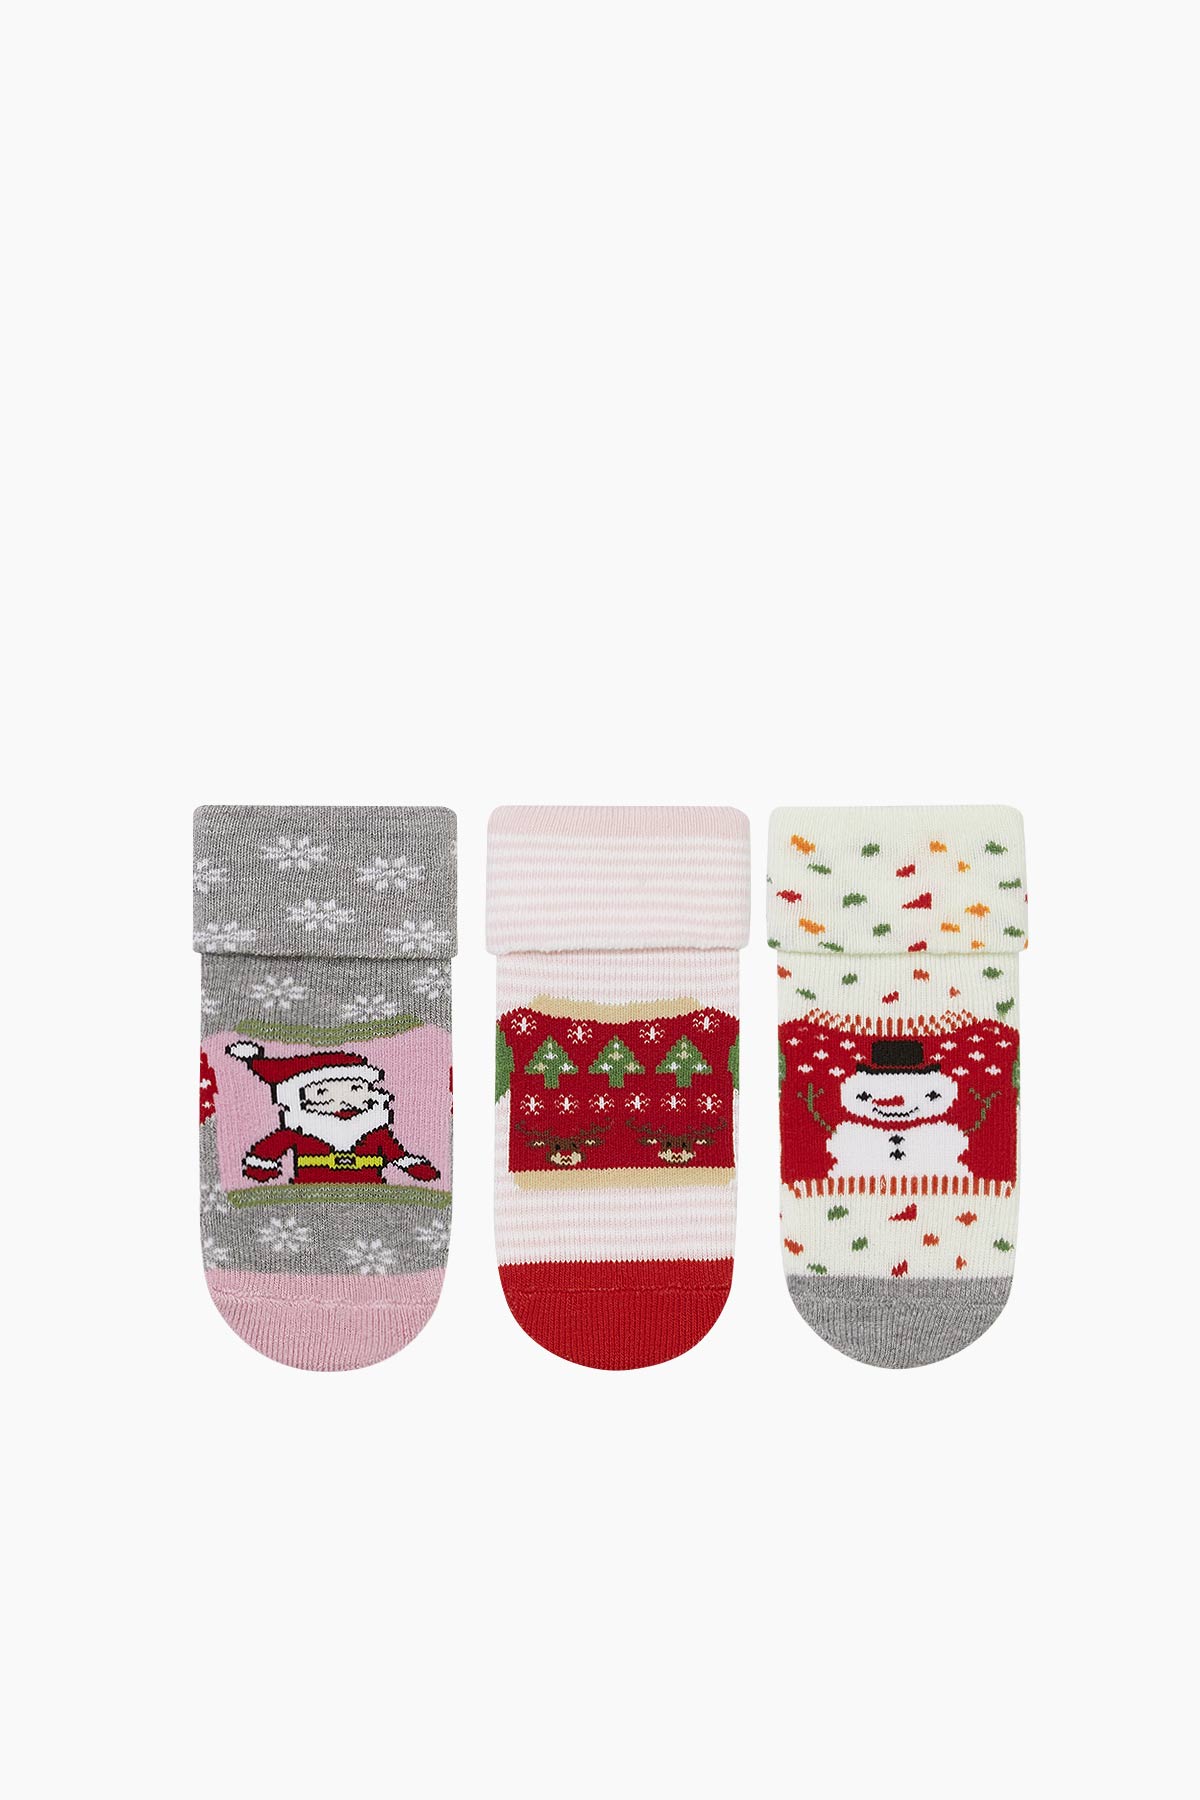 Bross - Bross 3-teilige Weihnachtsmuster Handtuch Baby Socken